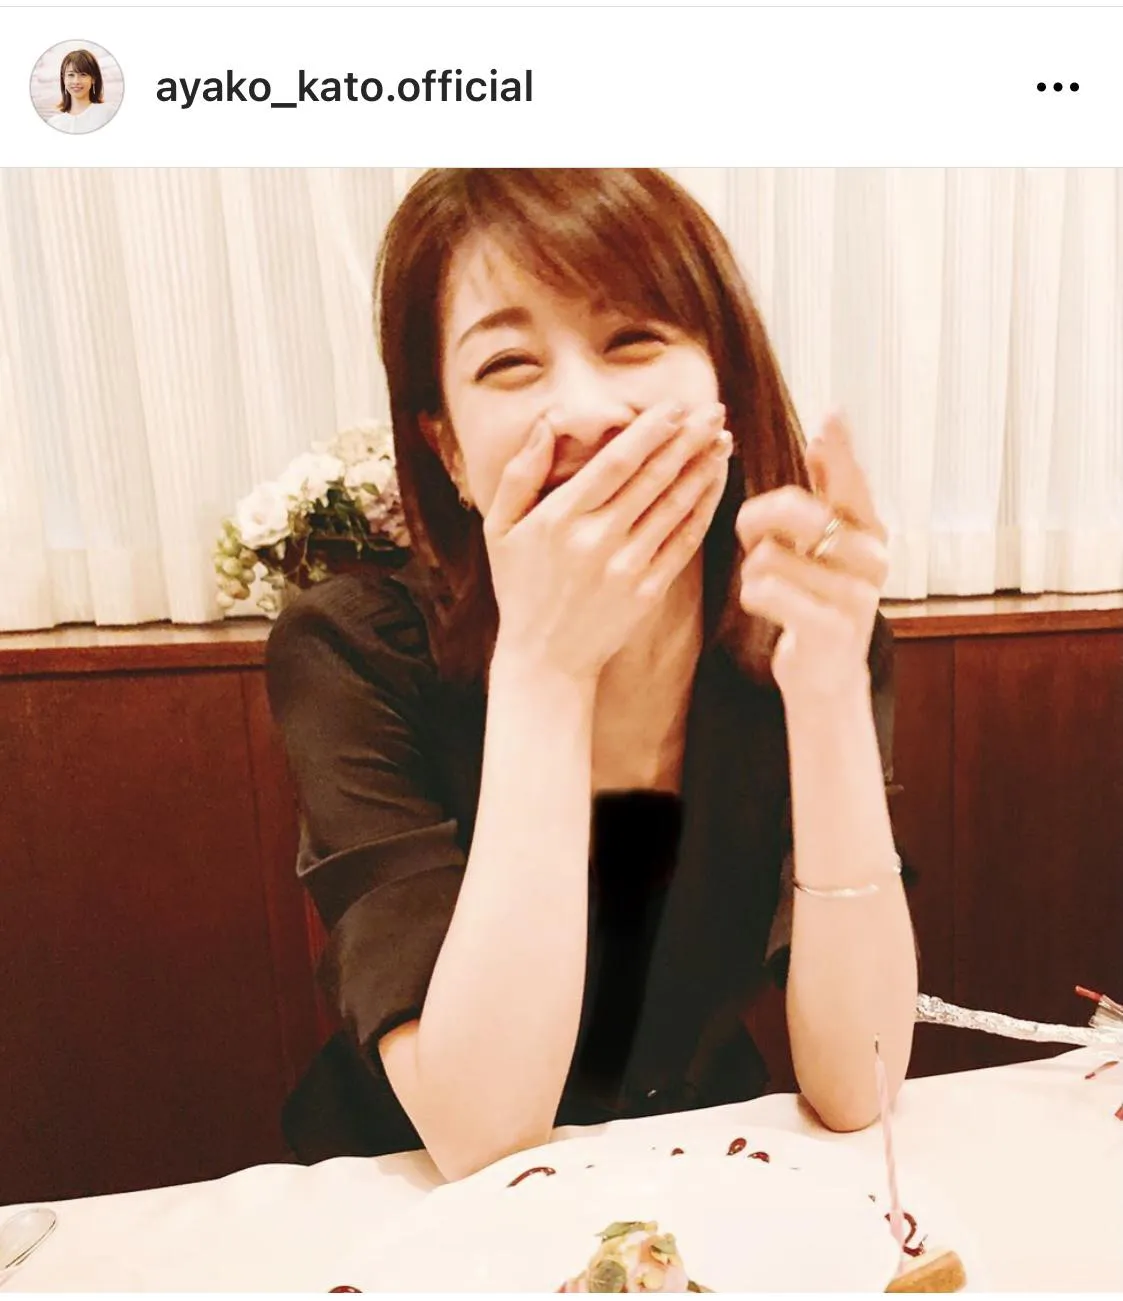 ※加藤綾子公式Instagram(ayako_kato.official)のスクリーンショット